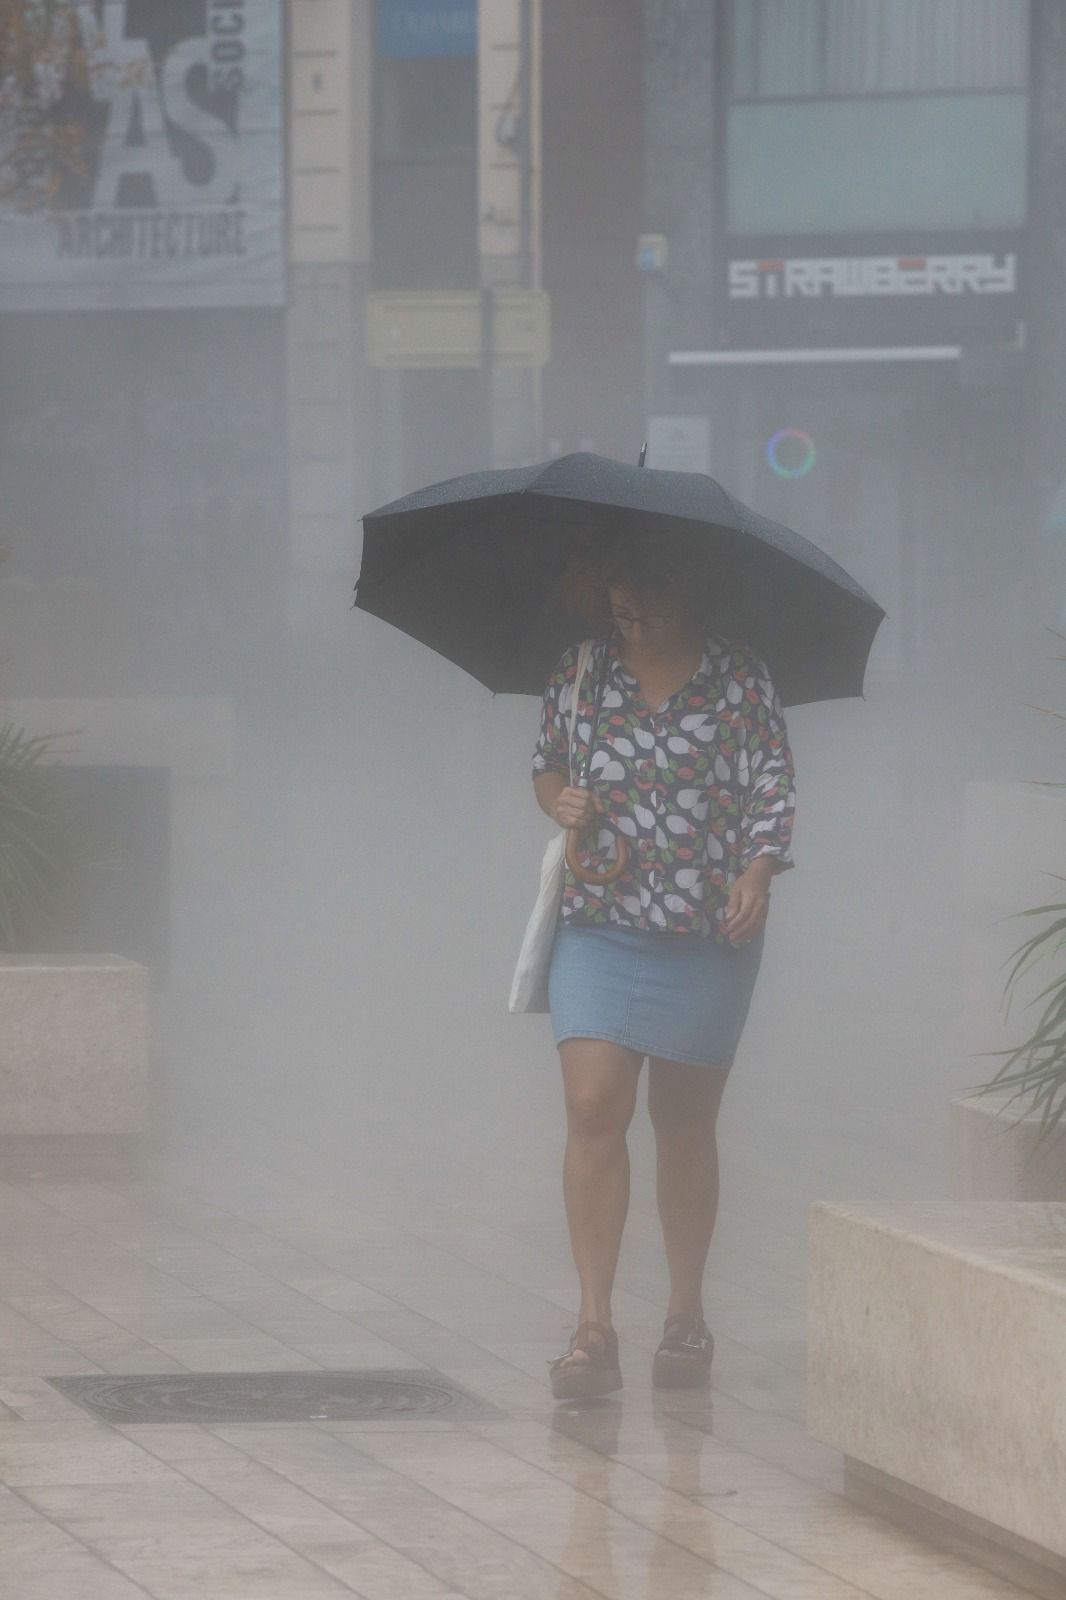 El temporal de lluvias en València, en imágenes